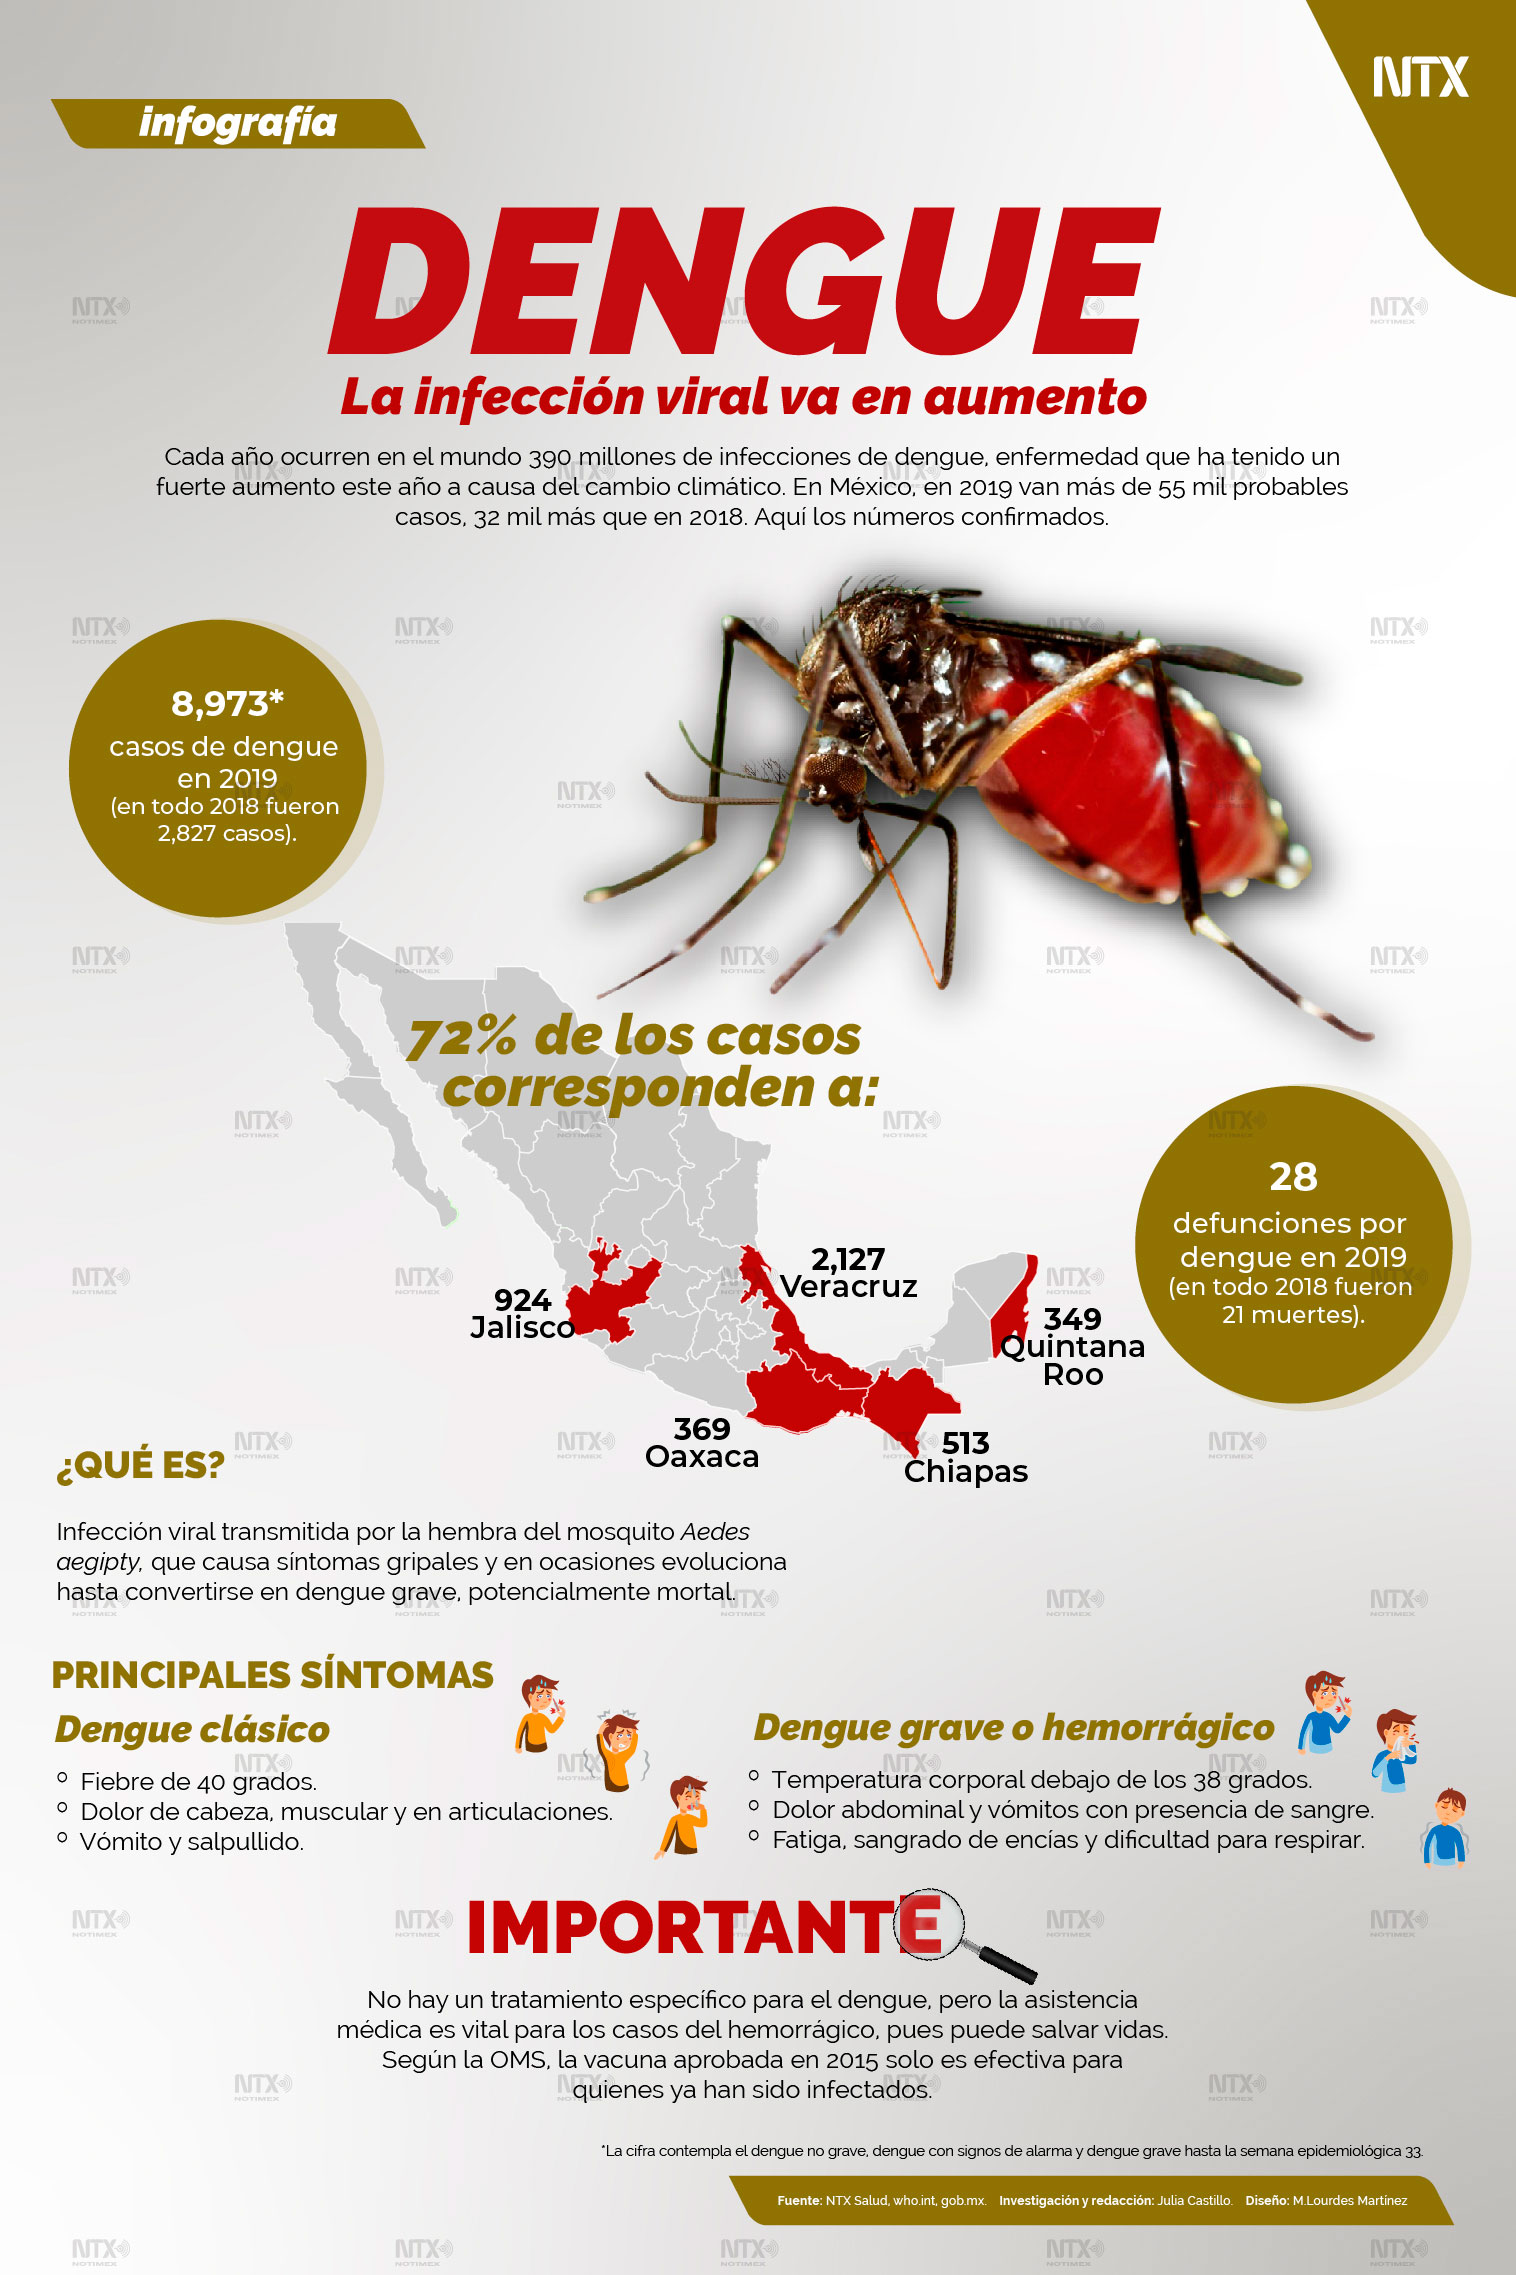 Dengue, la infección viral va en aumento